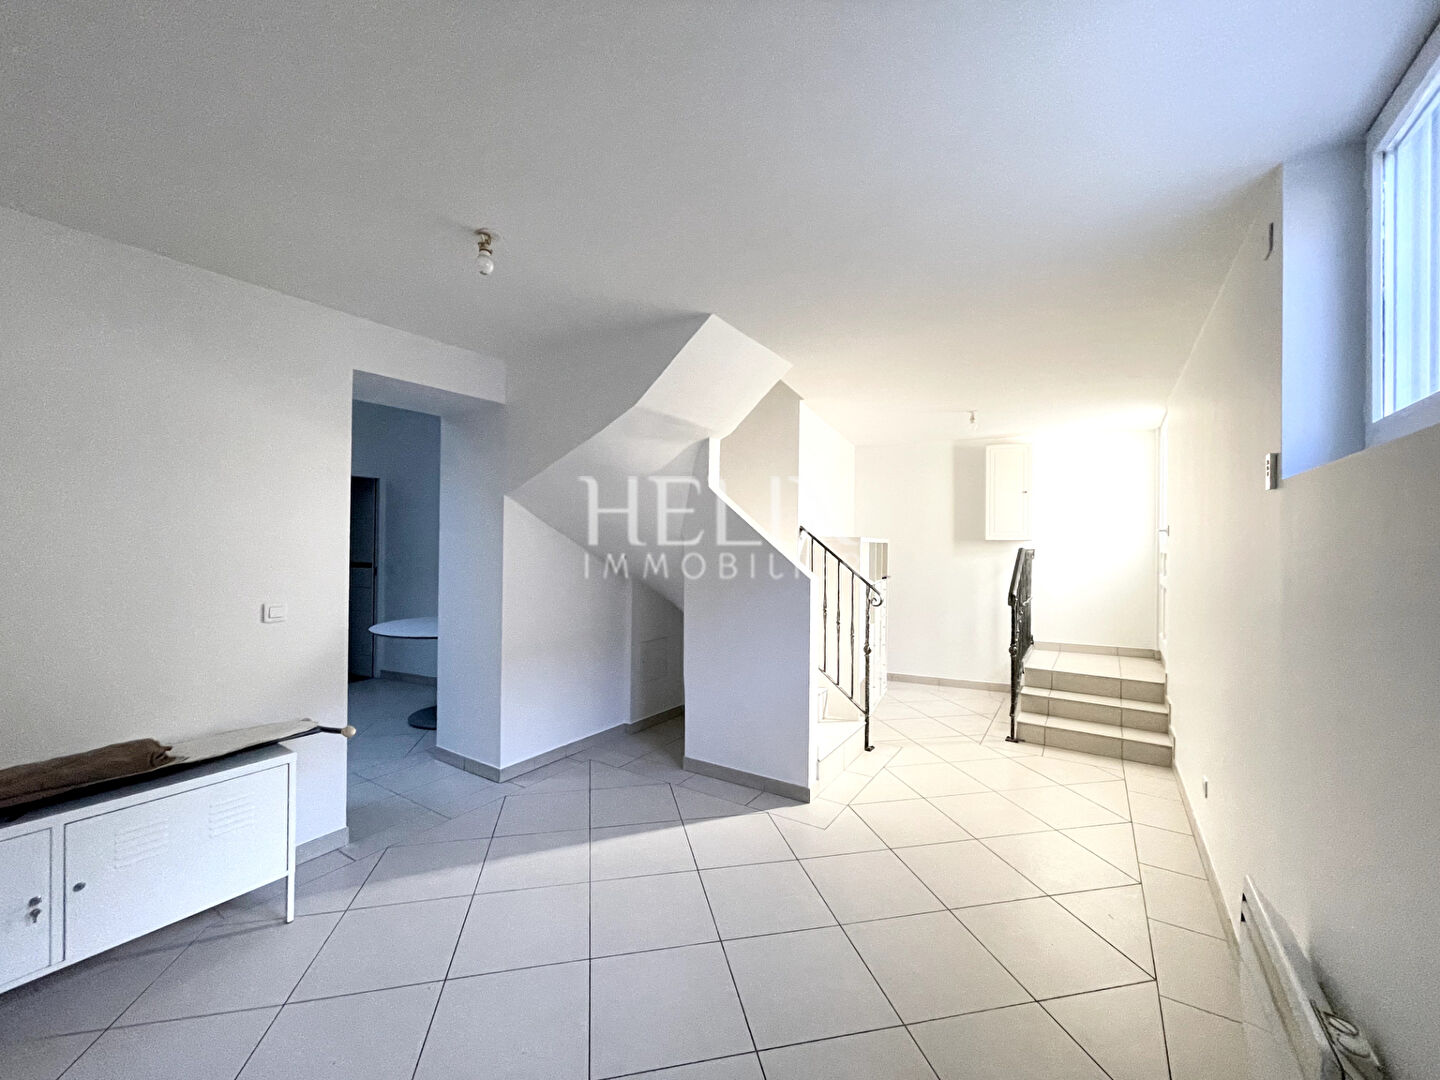 A vendre "Comme une petite maison" appartement en duplex 49,36 M2 à Saint Germain en Laye.